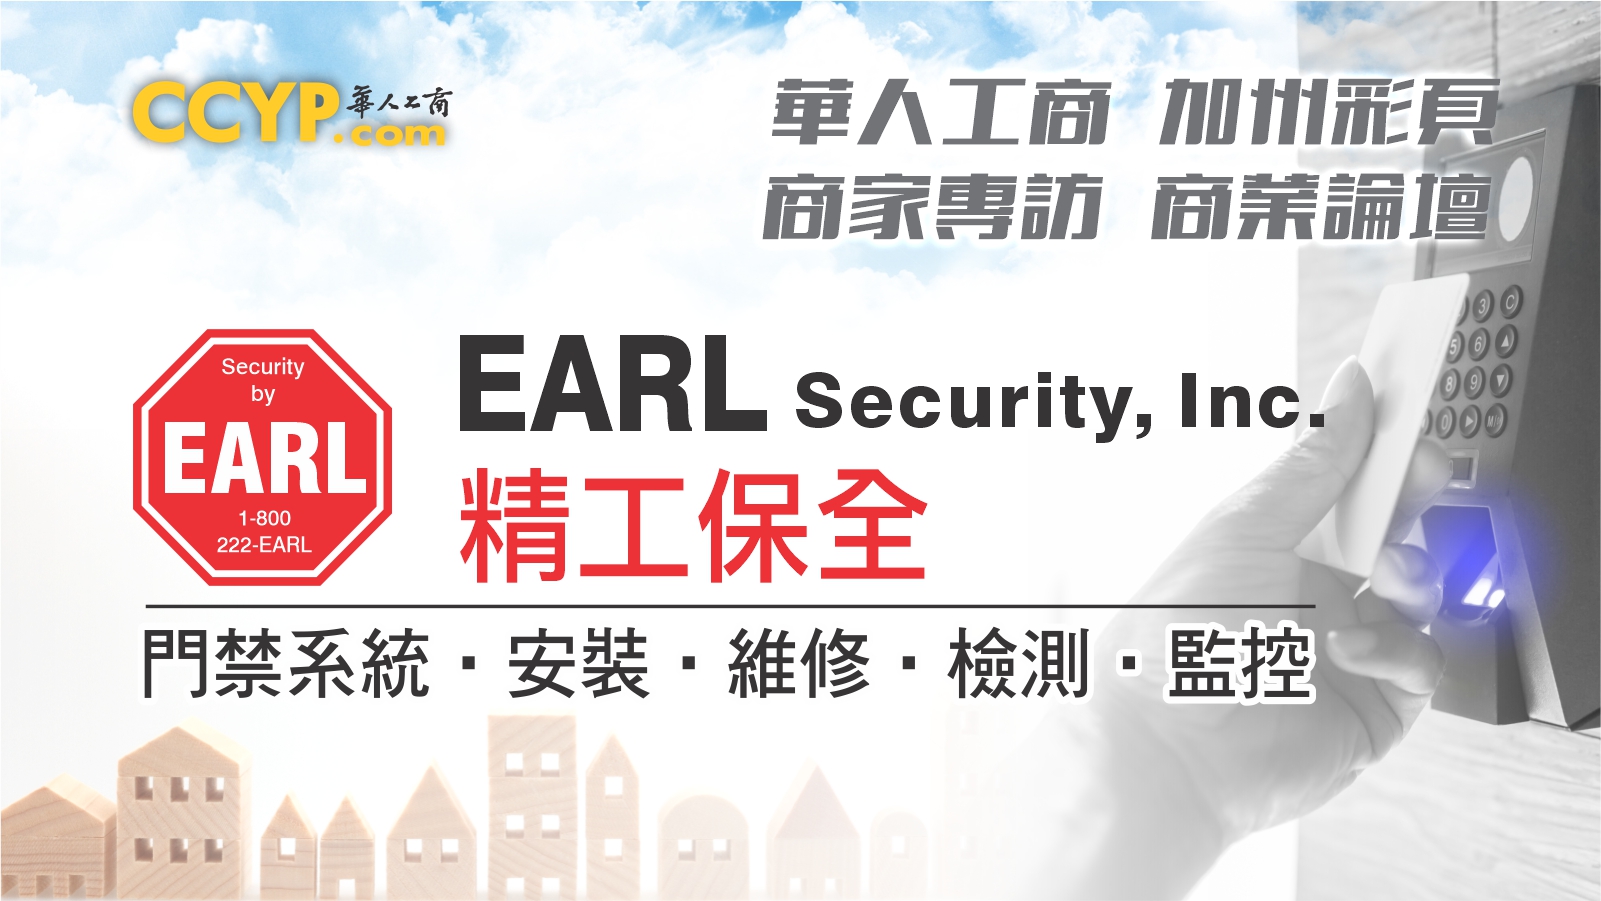 華人工商加州彩頁商家專訪 | Earl Security, Inc. 精工保全工程公司